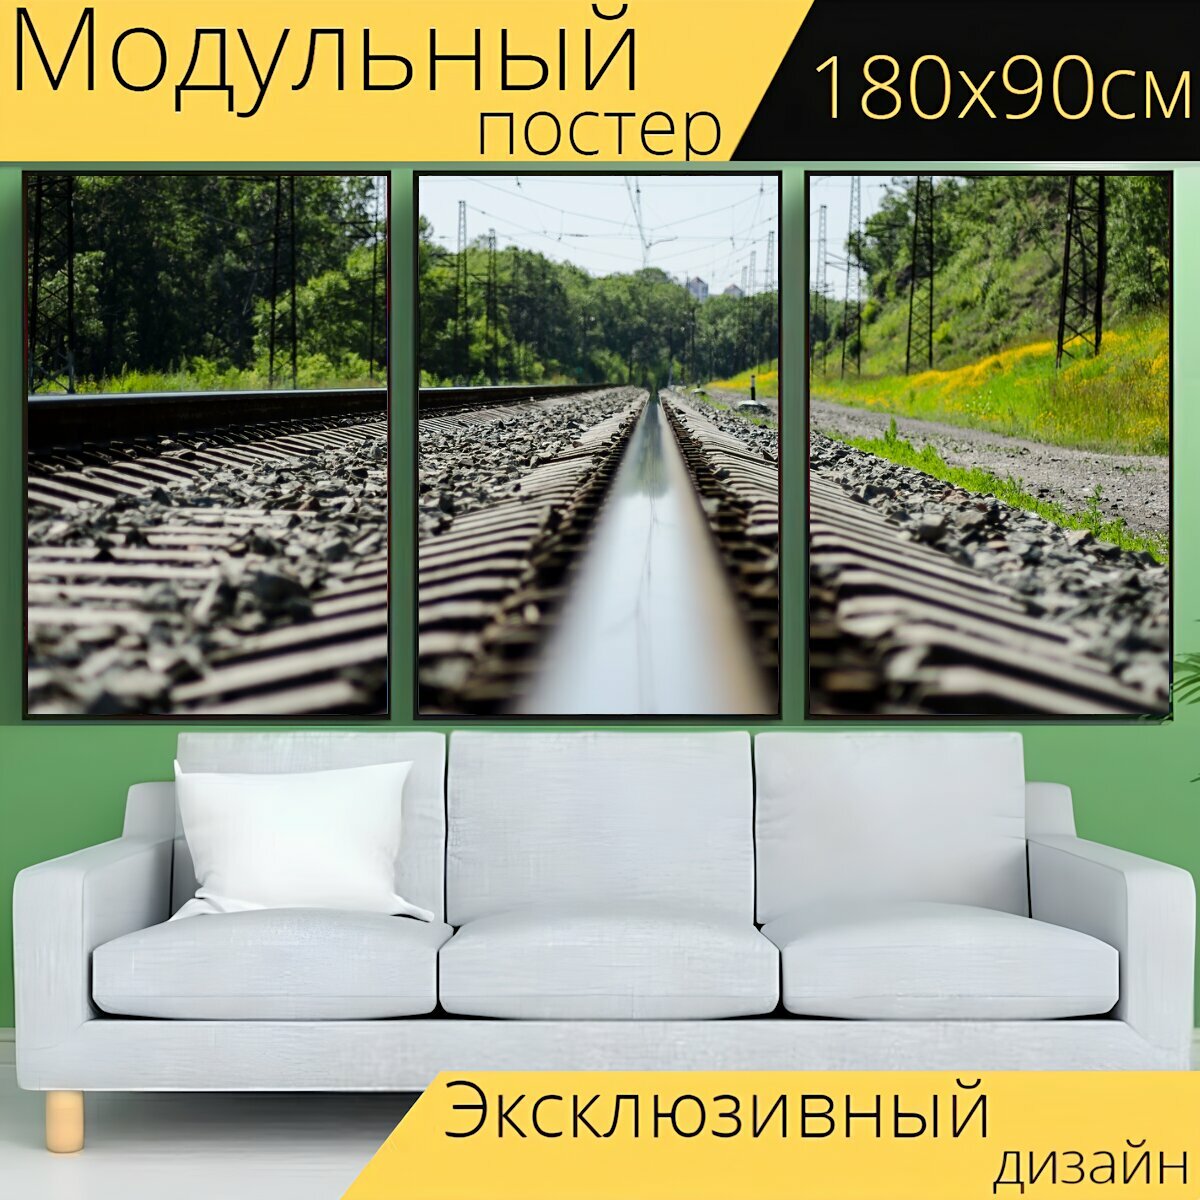 Модульный постер "Железнодорожный путь, железная дорога, поезд" 180 x 90 см. для интерьера